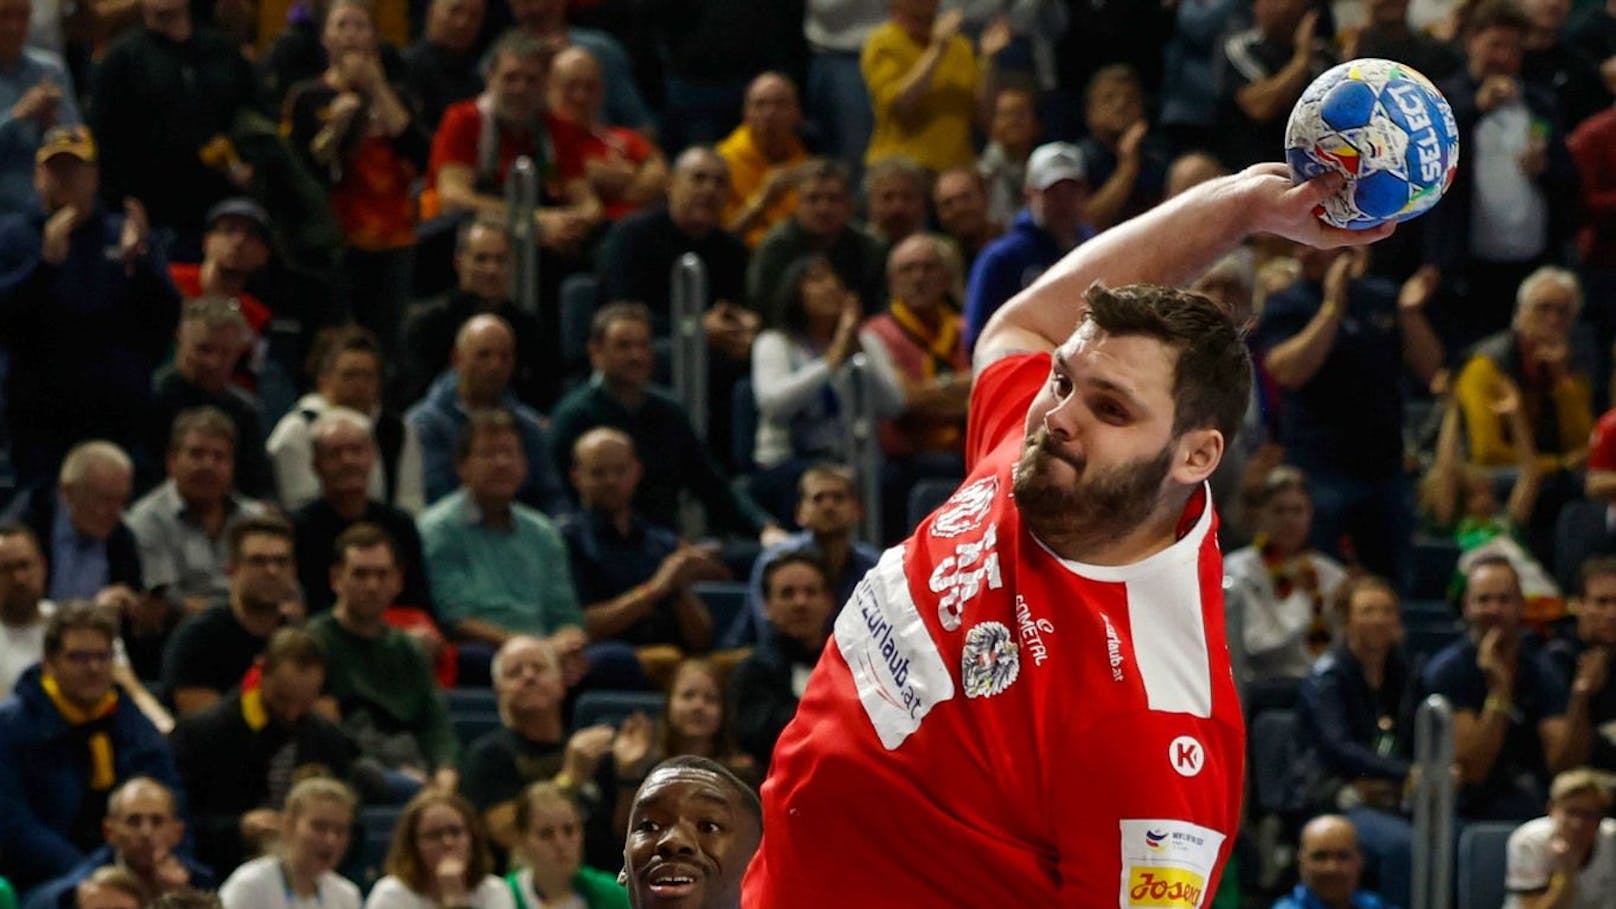 Österreichs Handball-Held schimpft über deutsche Fans